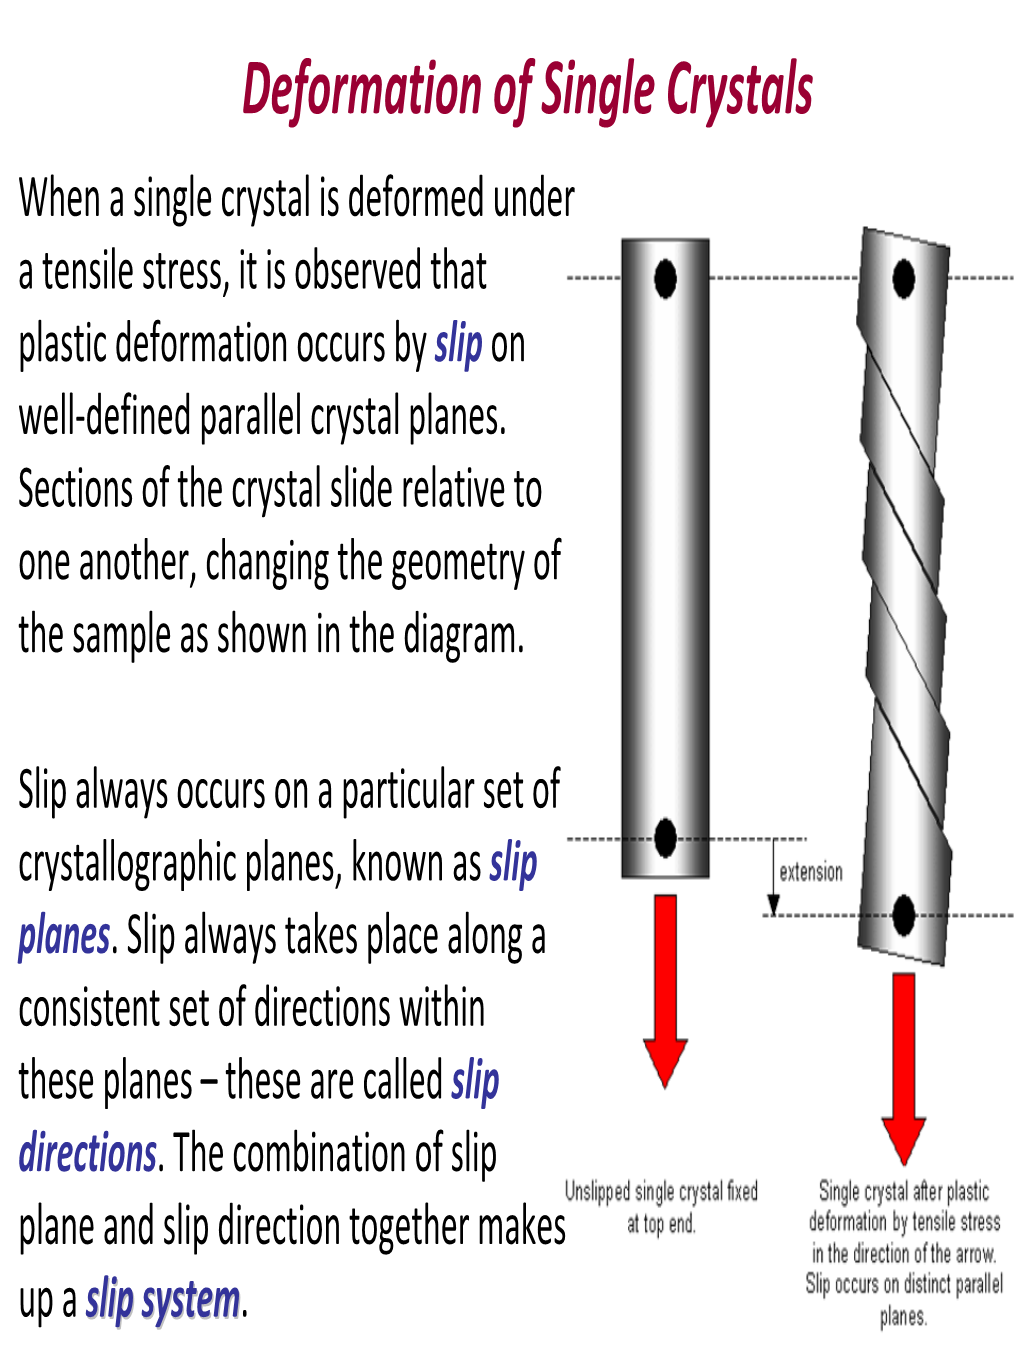 Deformation of Single Crystals